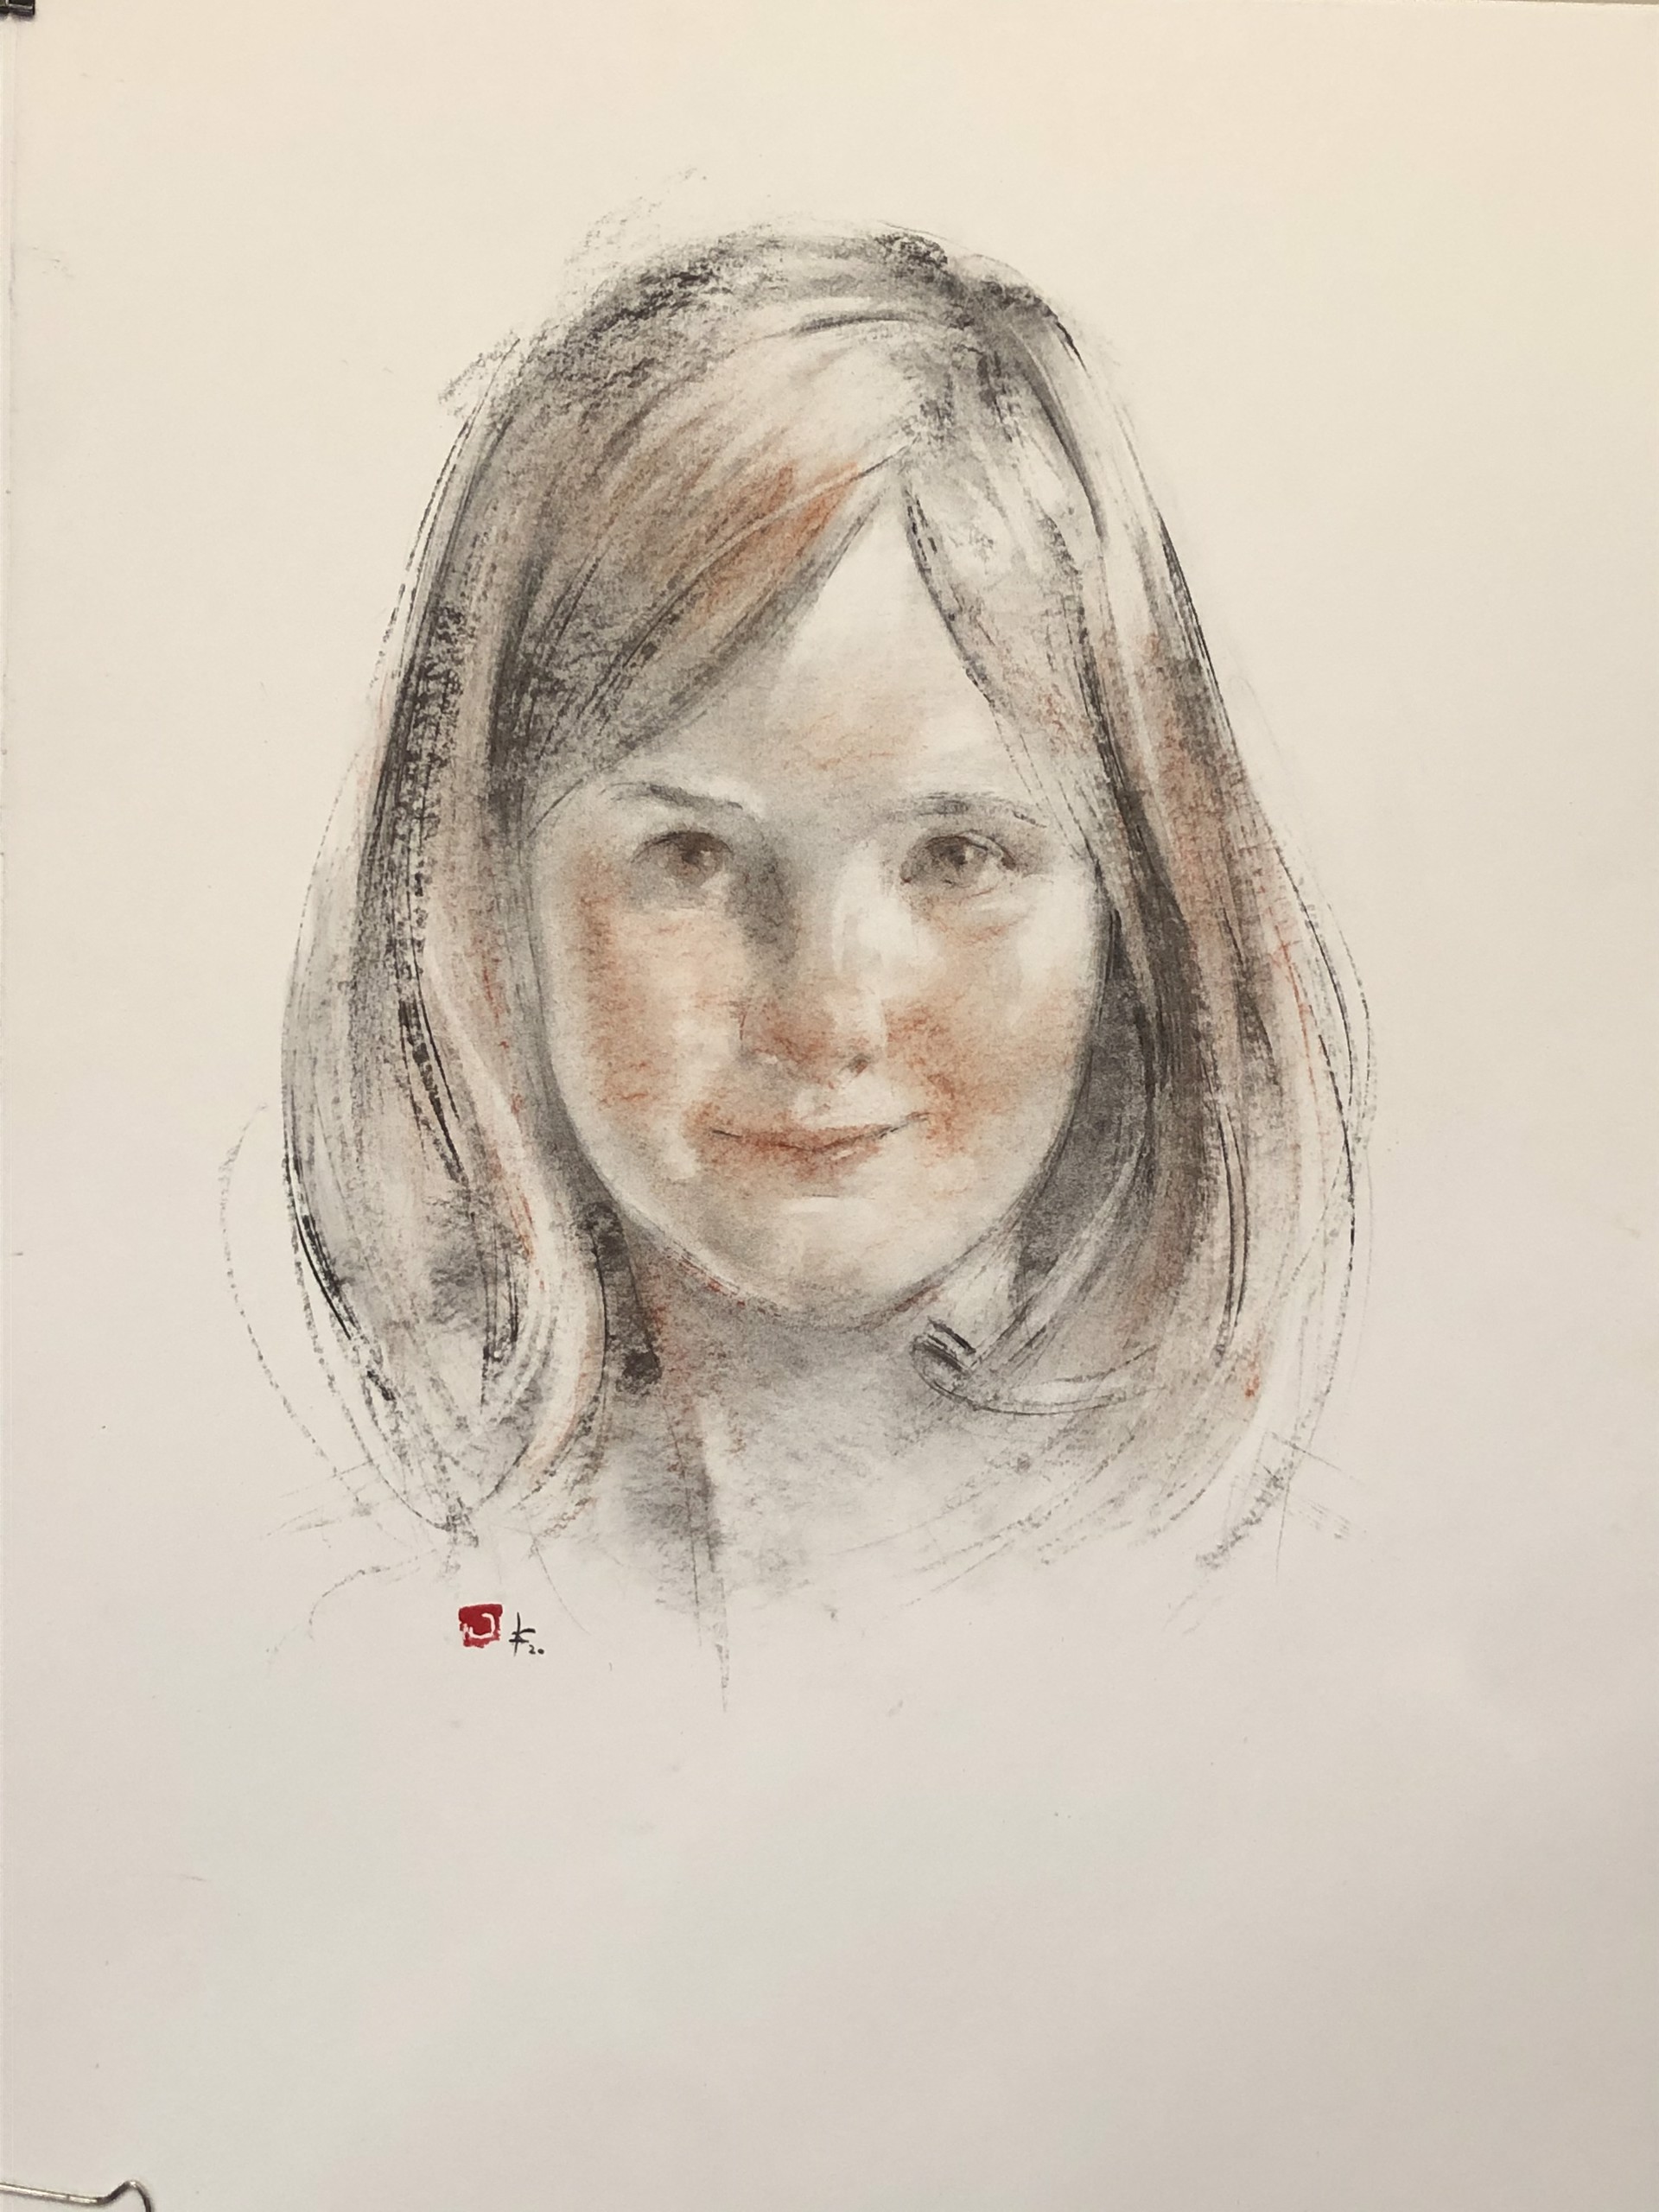 Hennen Portrait Commission